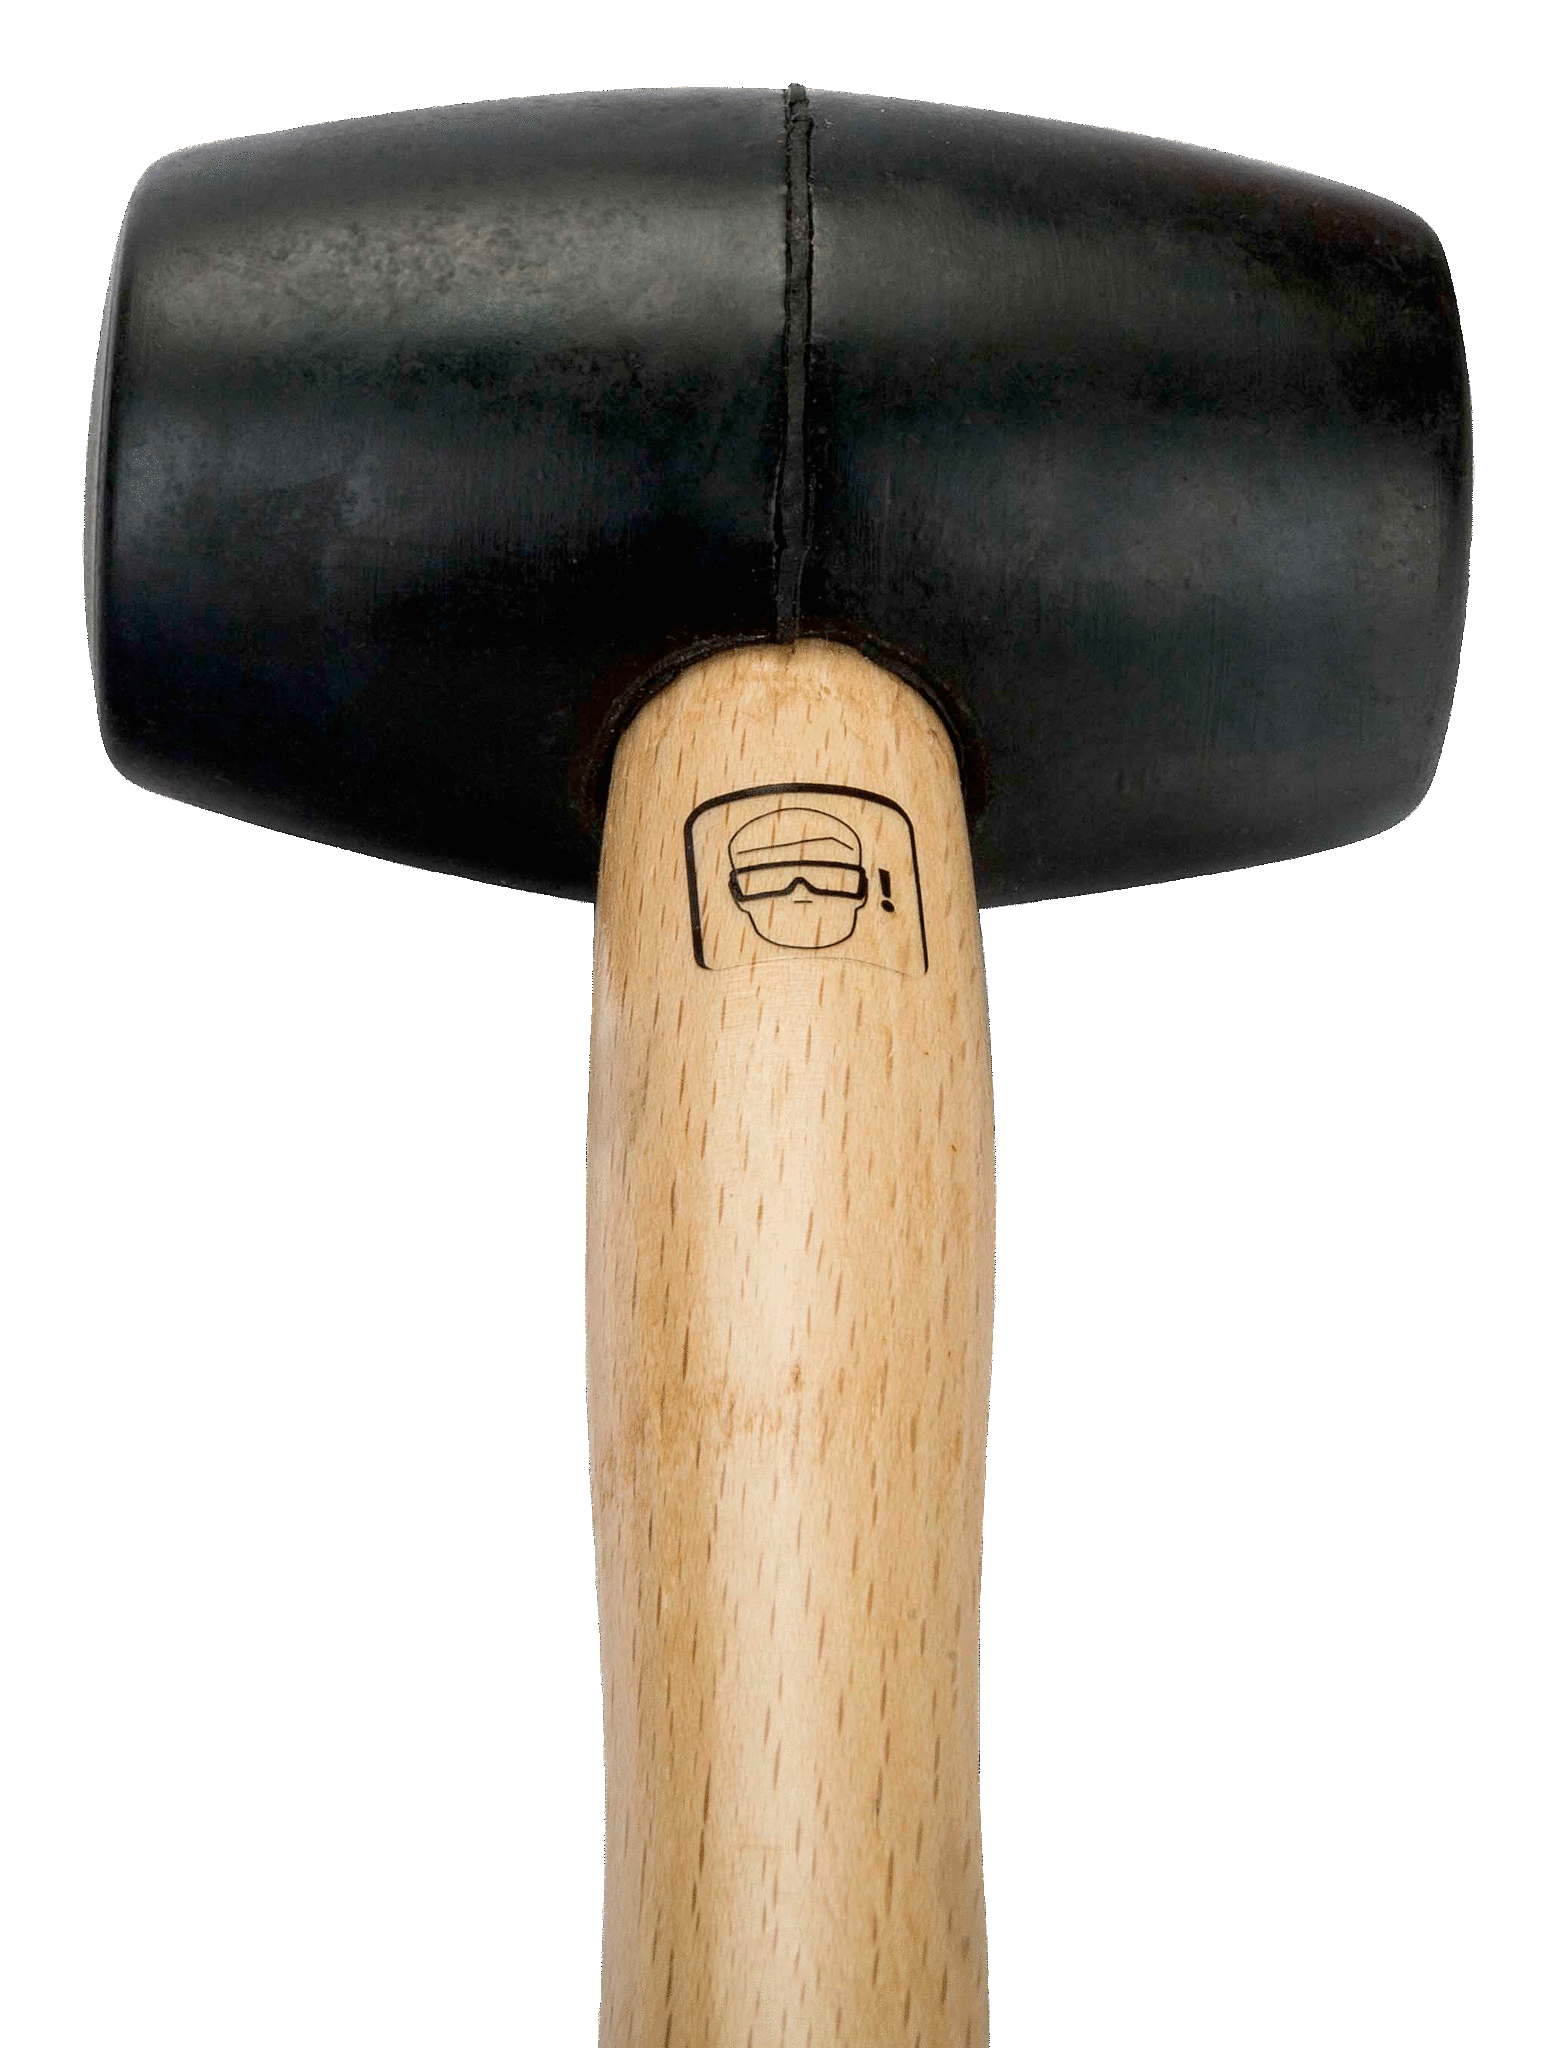 картинка Резиновая киянка, деревянная рукоятка BAHCO 3625RM-65 от магазина "Элит-инструмент"